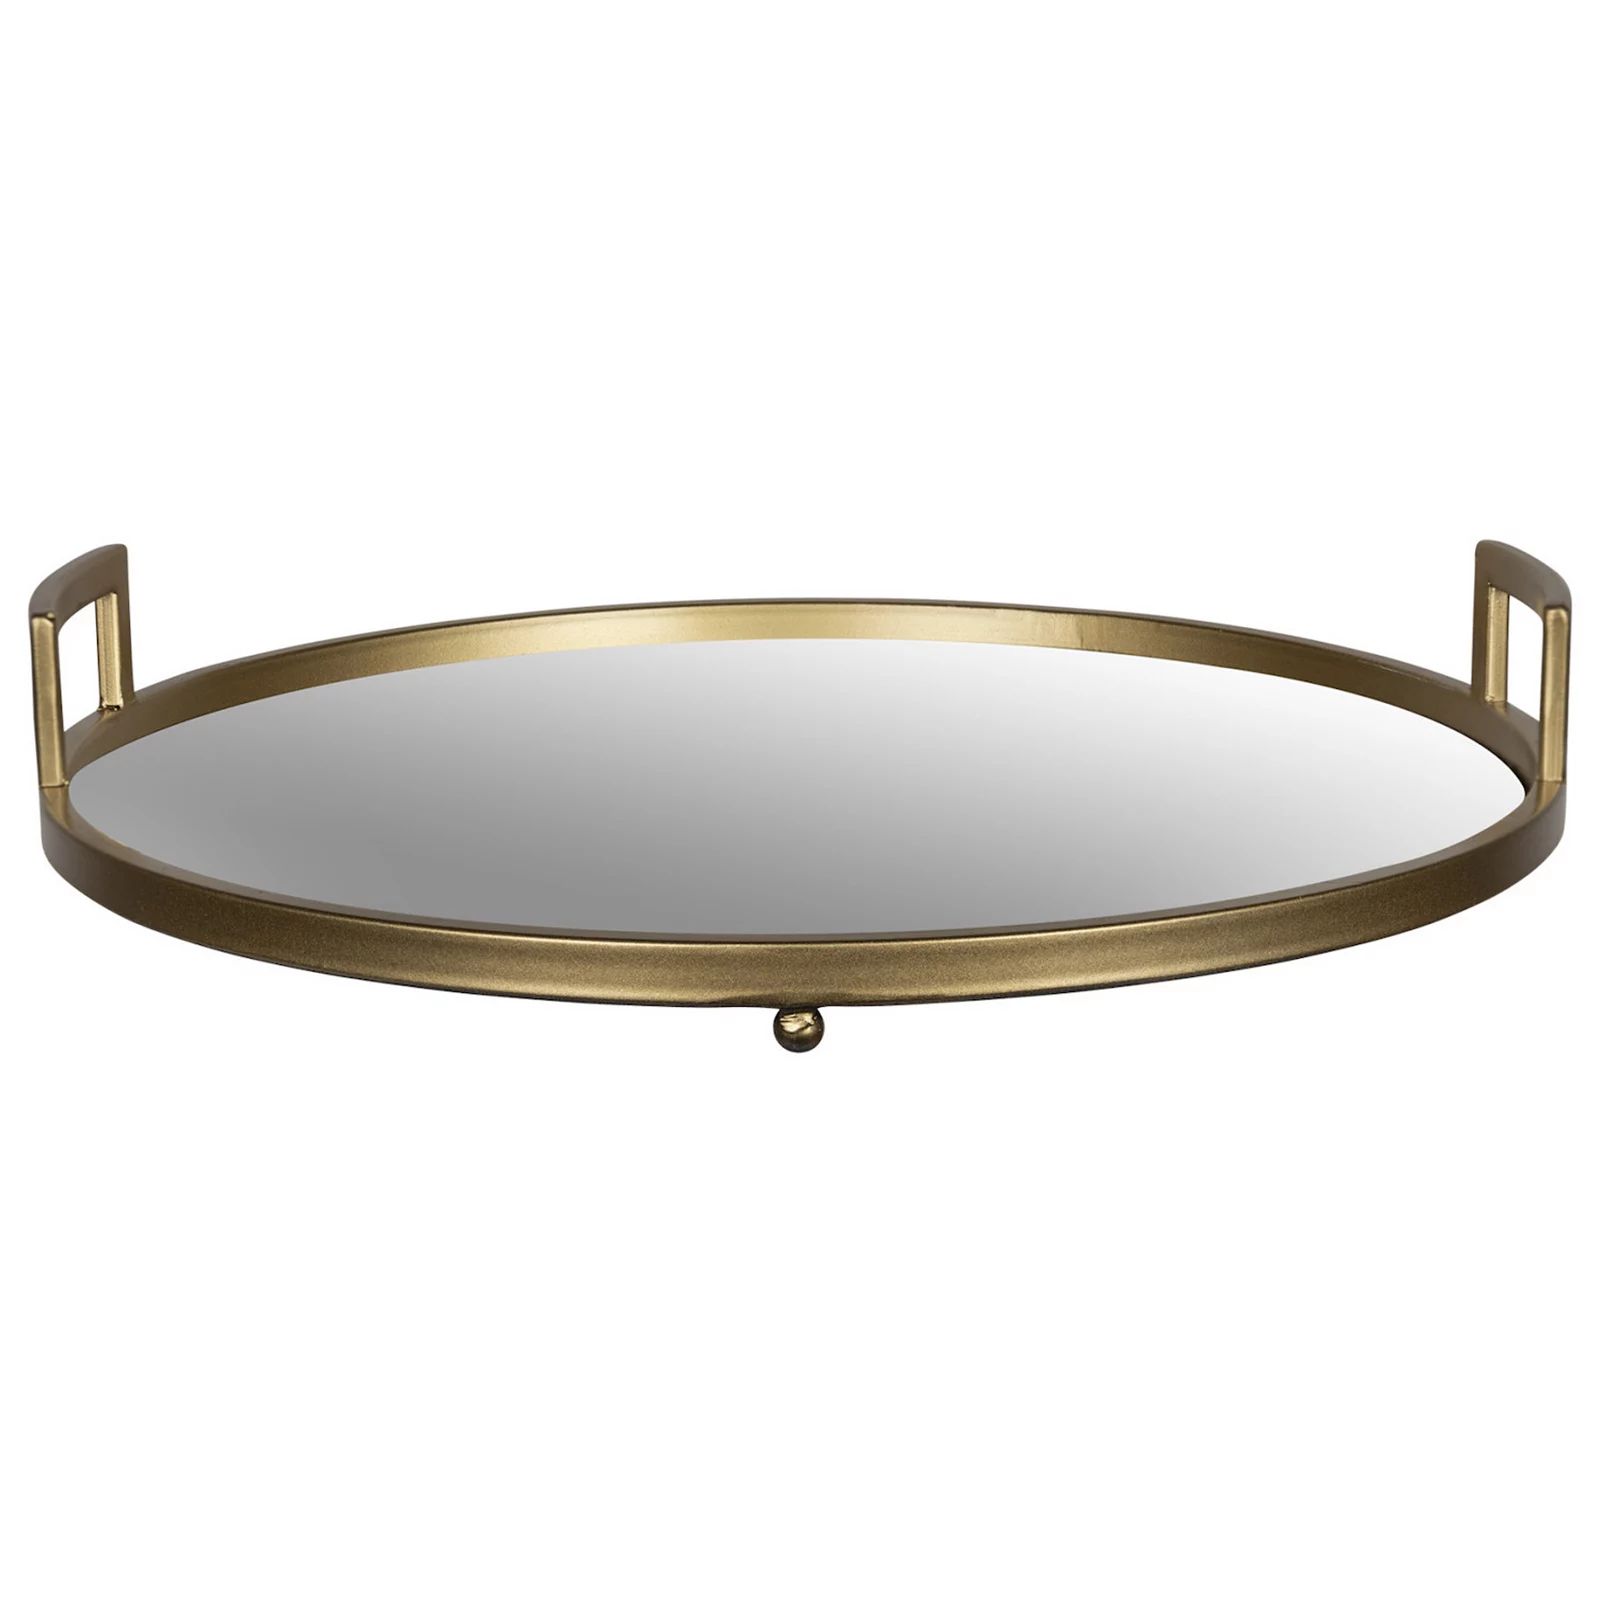 Stratton Home Decor Gold Finish Mirror Decorative Tray Table Decor | Kohl's